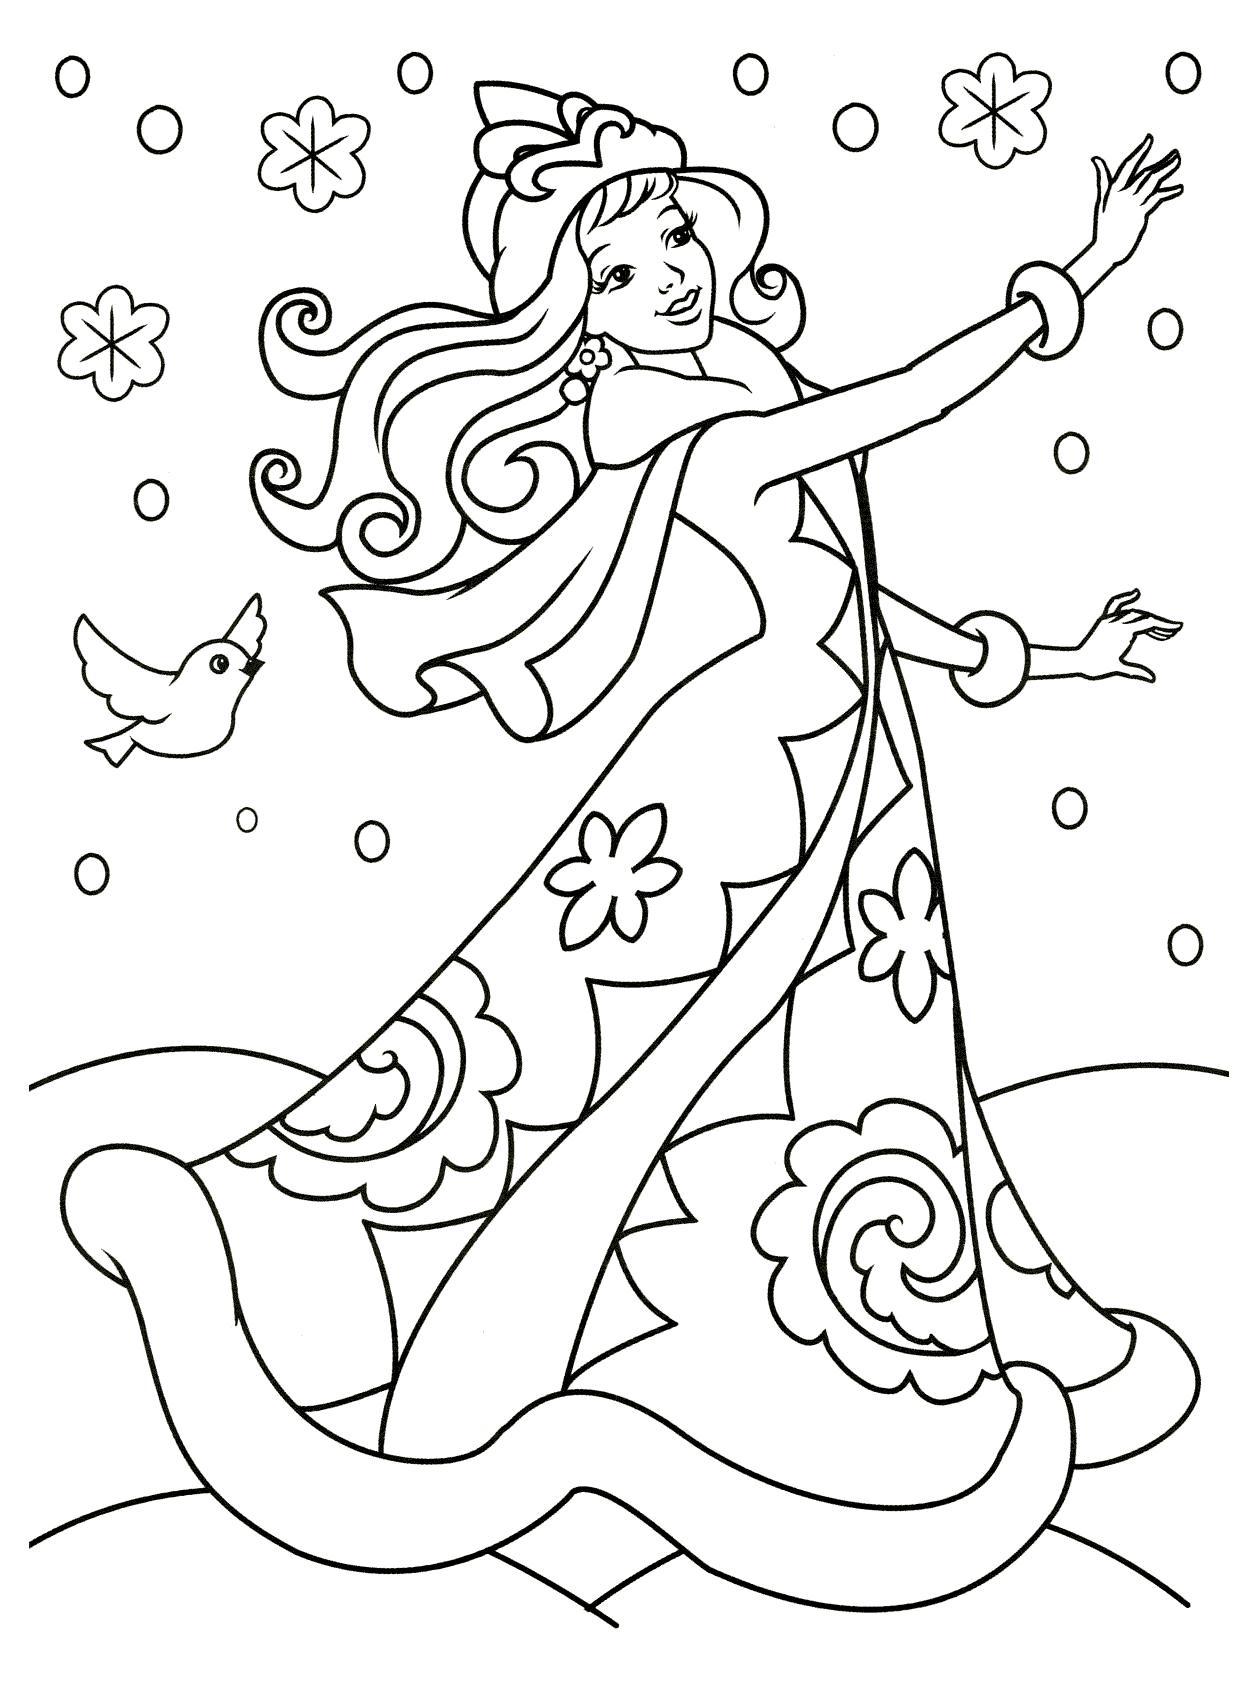  раскраски на тему Снежная Королева       раскраски со Снежной Королевой на тему мультфильмов для мальчиков и девочек. Интересные раскраски с персонажами мультфильма про Снежную Королеву 